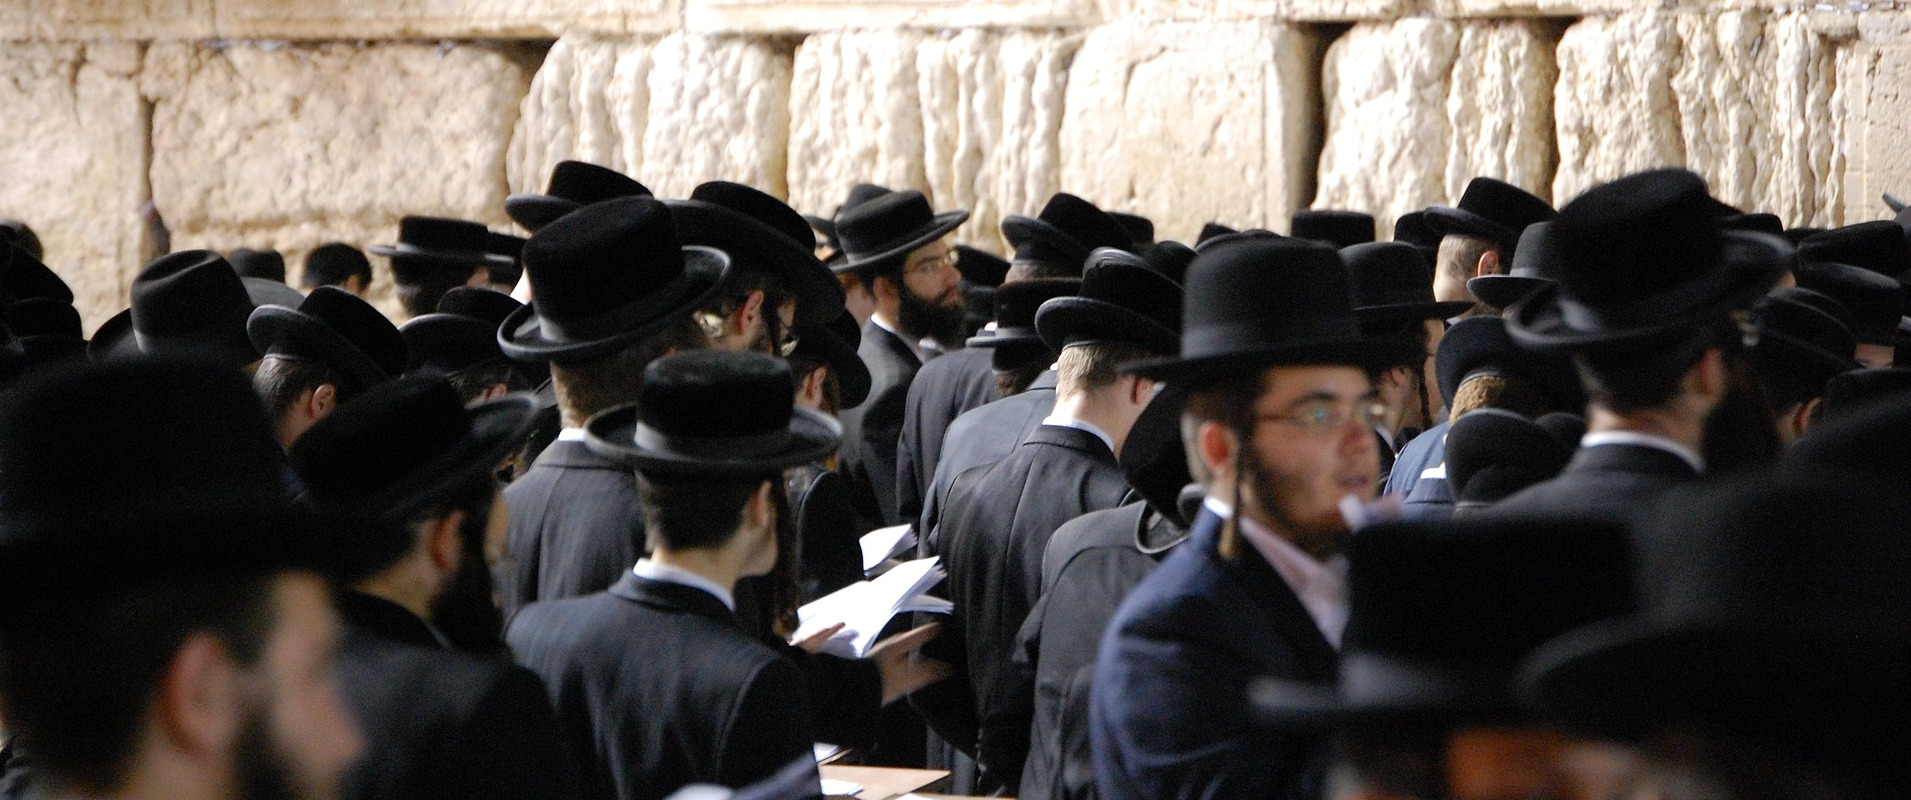 Orthodoxe Juden vor der Klagemauer in Jerusalem